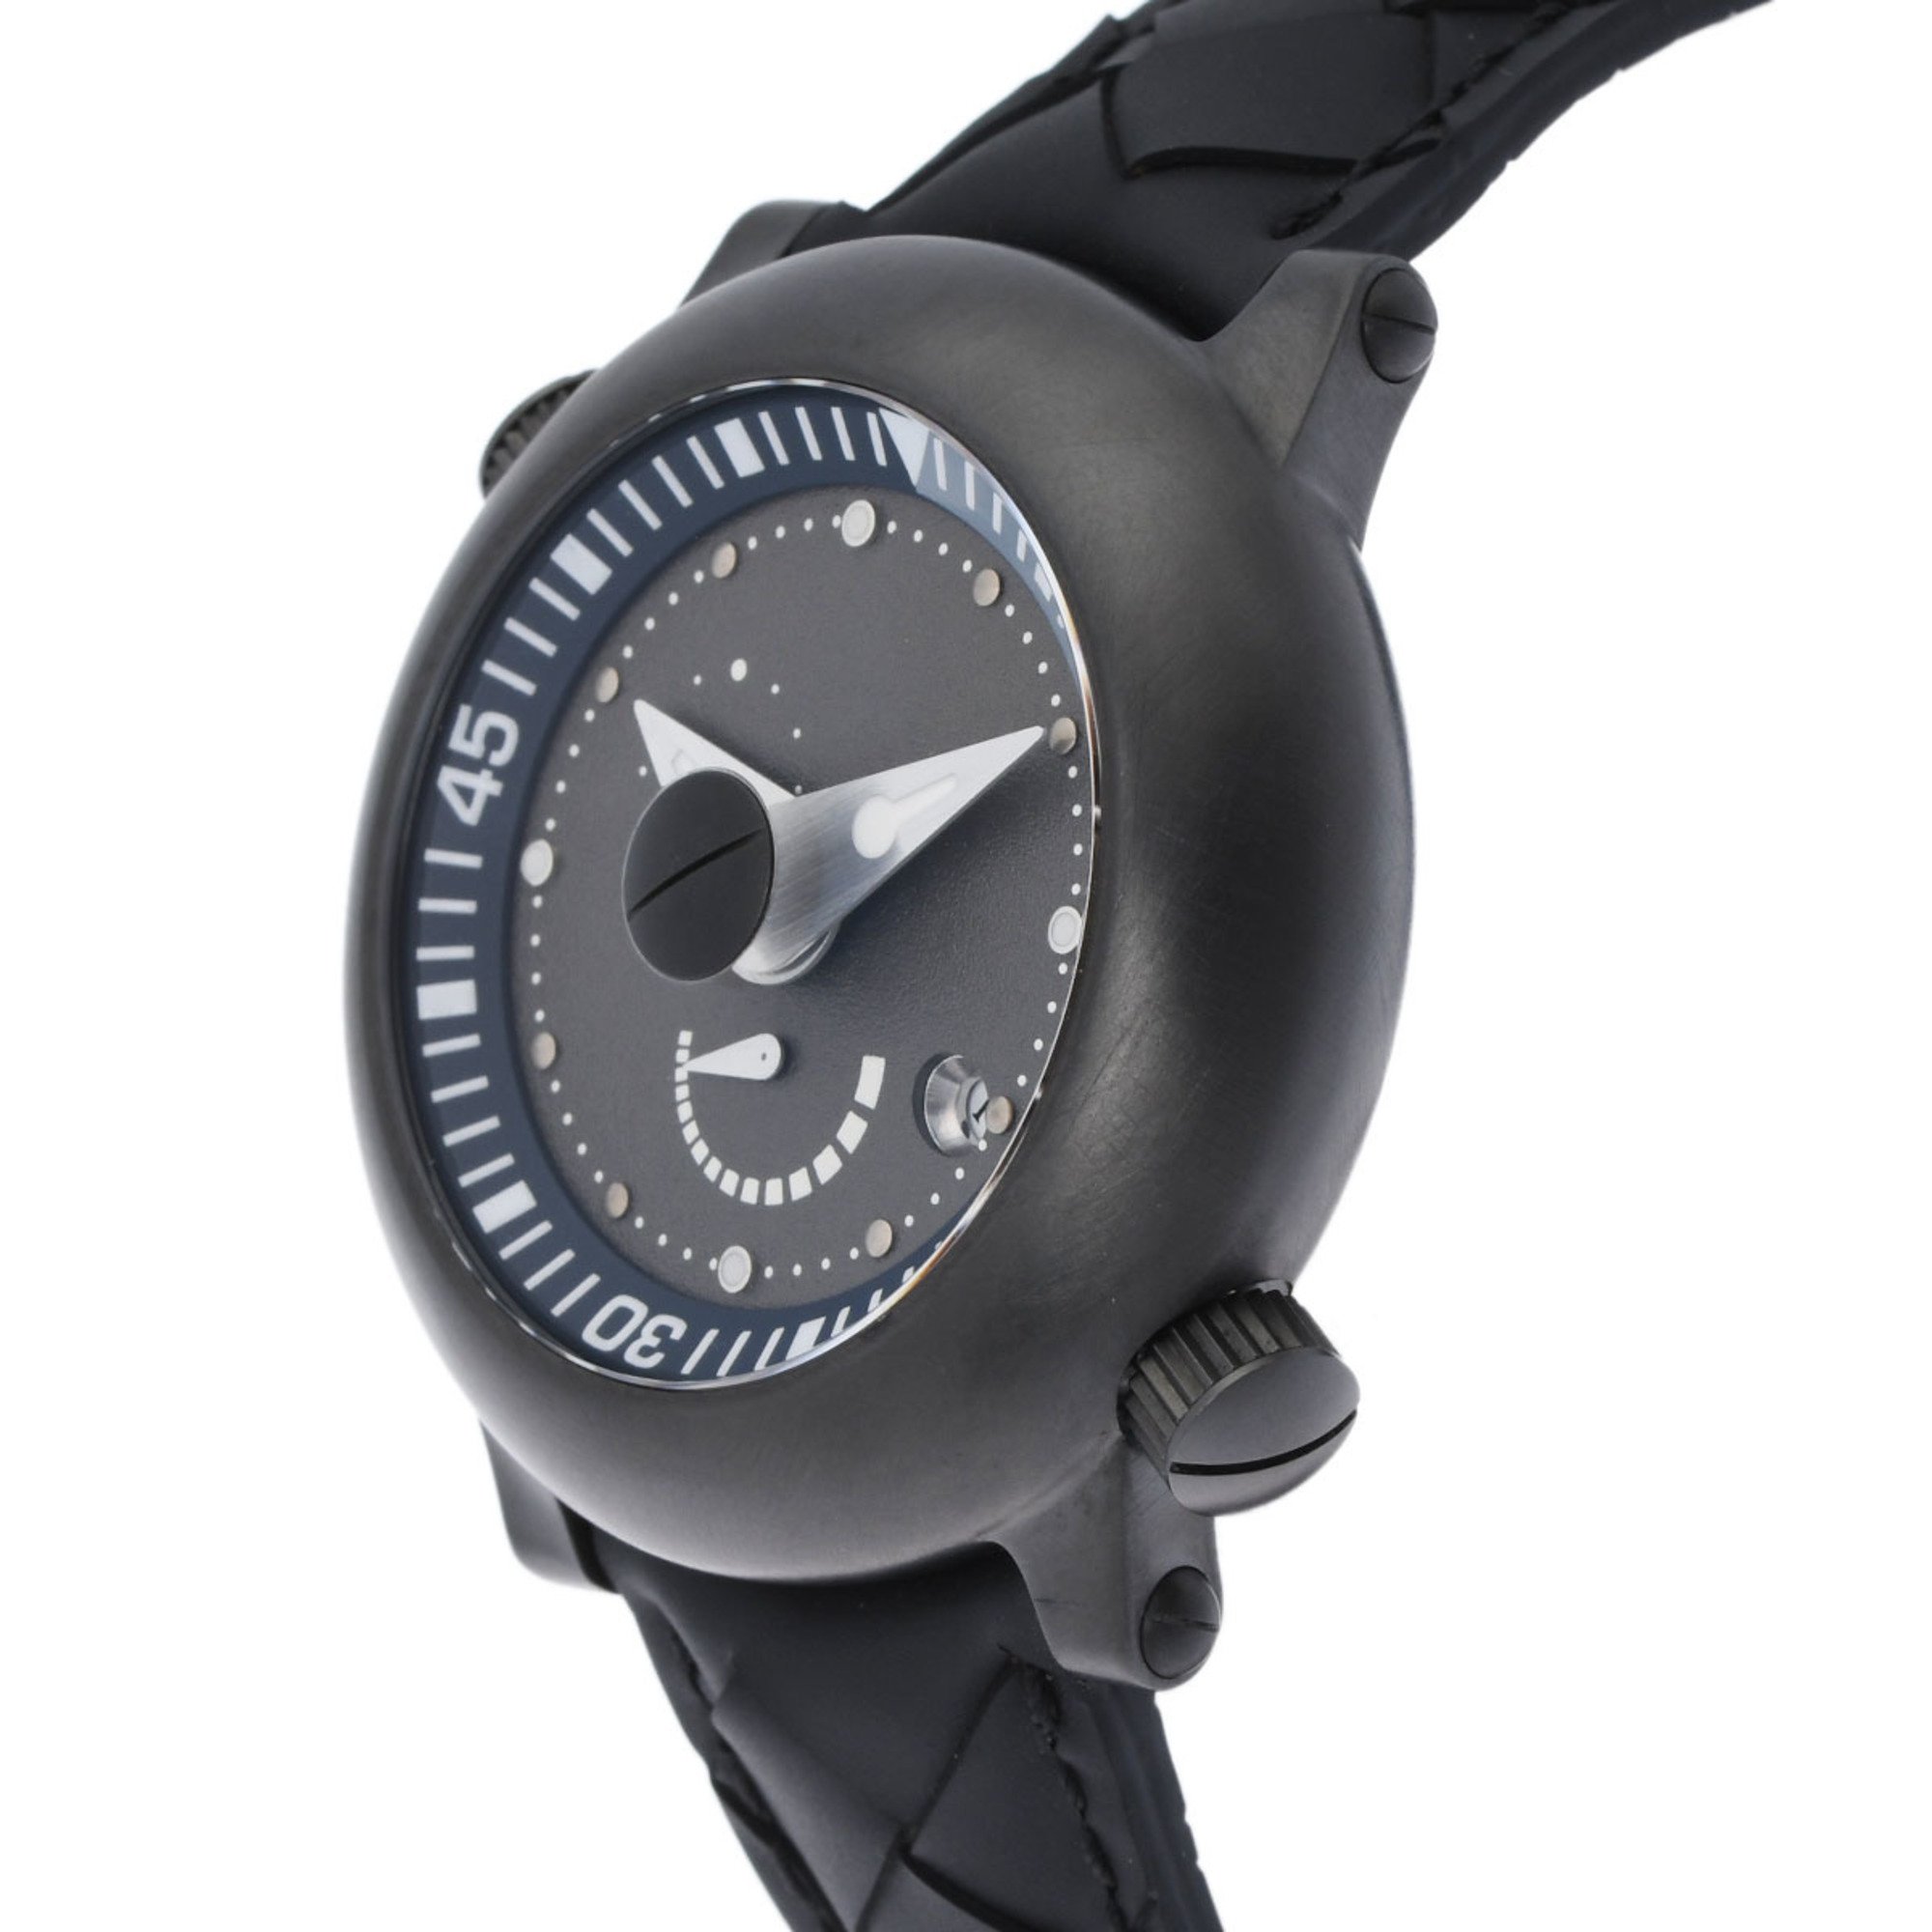 BOTTEGAVENETA Bottega Veneta BVX Girard-Perregaux Men's SS/Rubber Watch Automatic Greige Dial